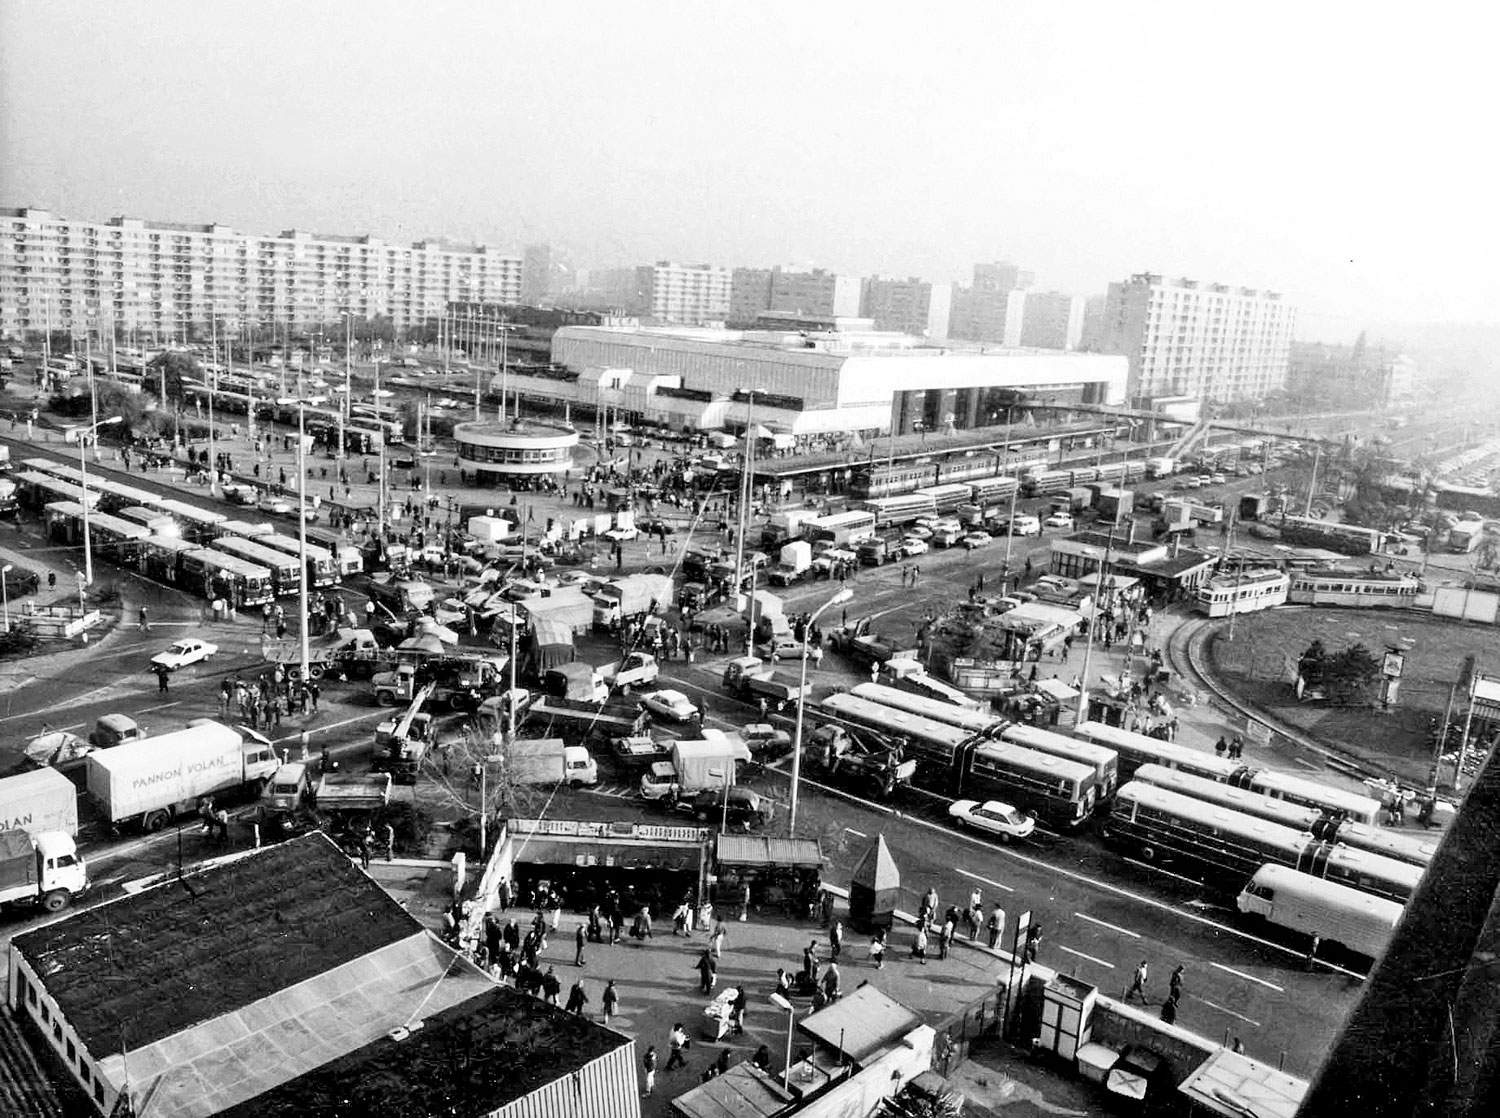 Emlékezetes kép: az Örs vezér tér 1990. október 26-án a taxisblokád idején 